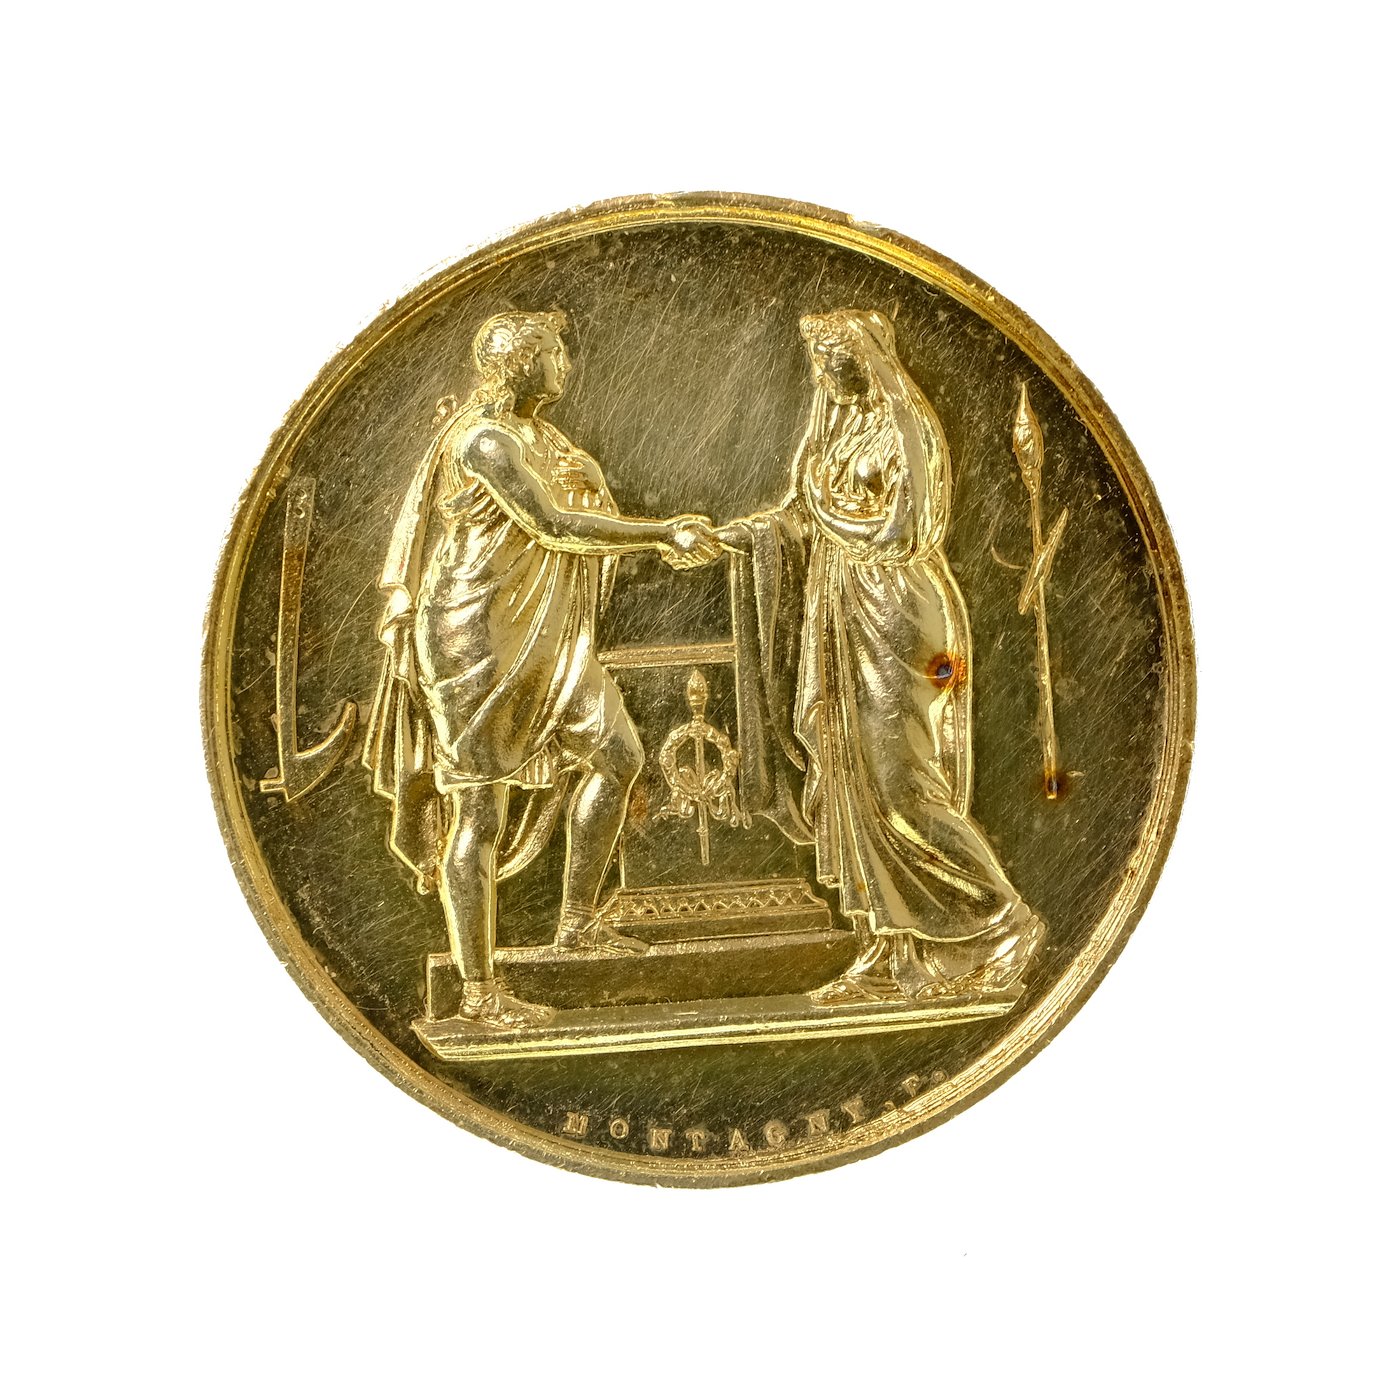 .. - Stříbrná svatební medaile. Francie datum 20.10.1860, puncováno, pozlaceno, stříbro, hrubá hmotnost 18,93 g